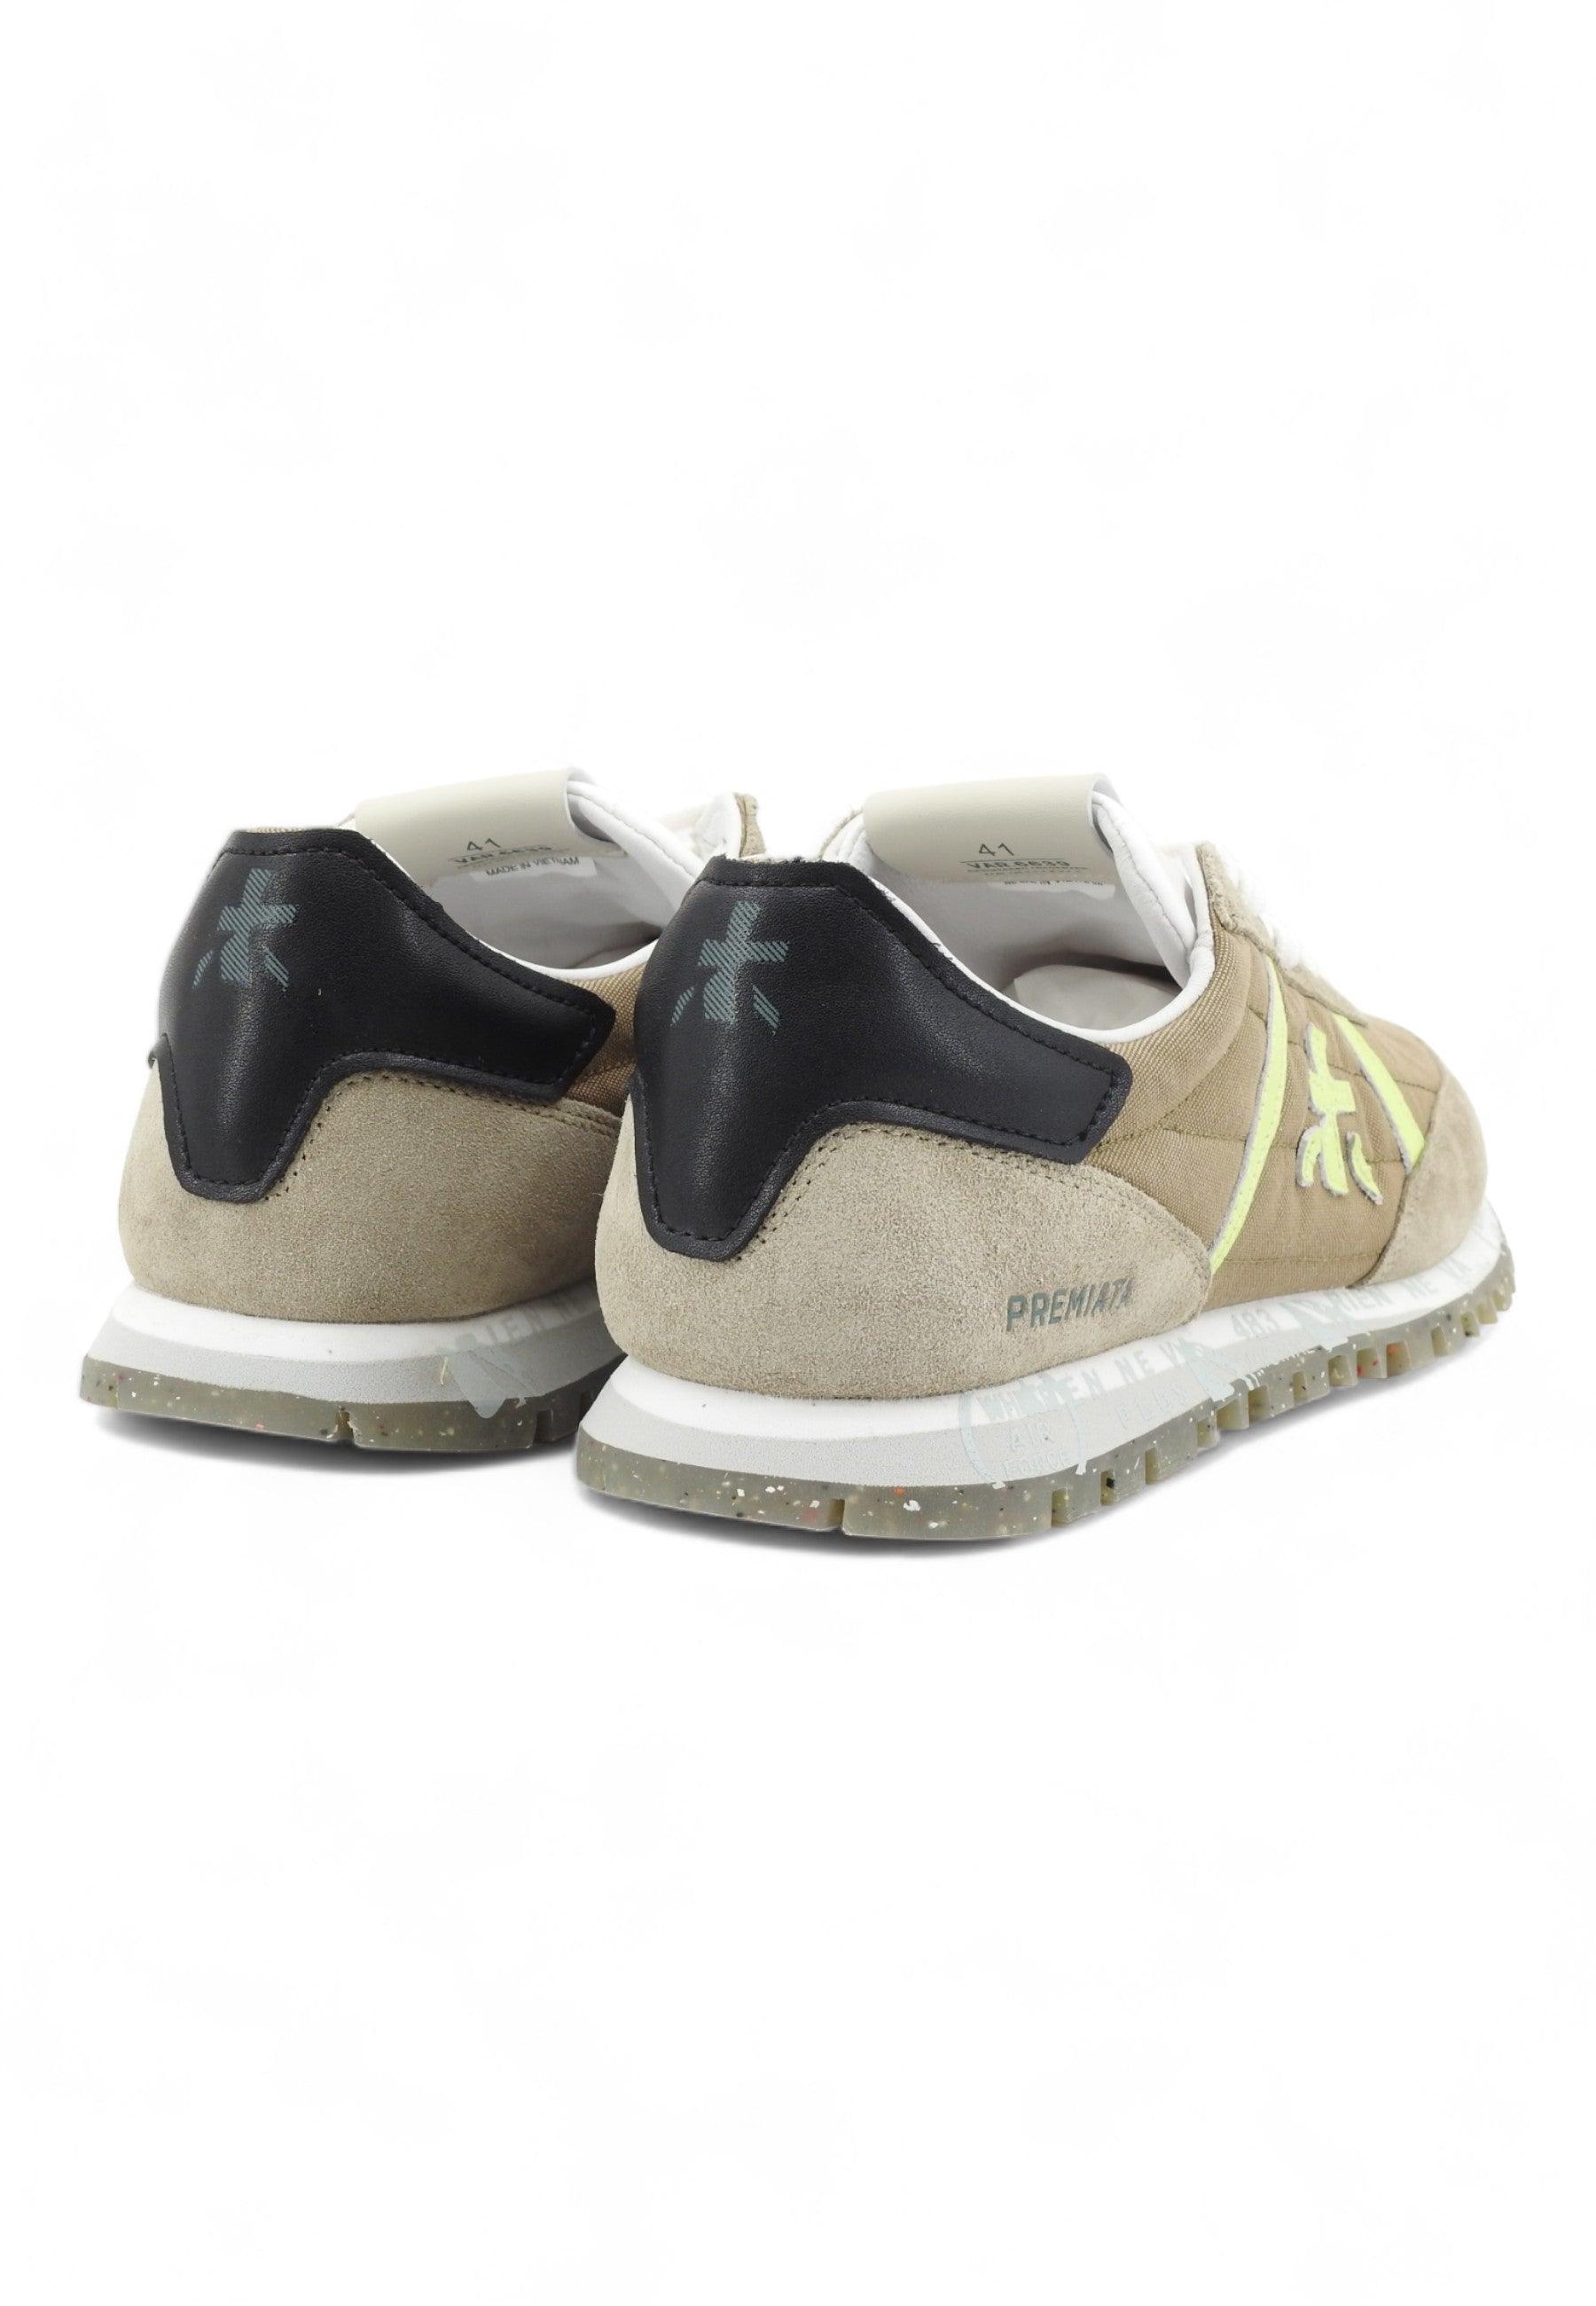 PREMIATA Sneaker Uomo Marrone Verde Grigio SEAN-6639 - Sandrini Calzature e Abbigliamento